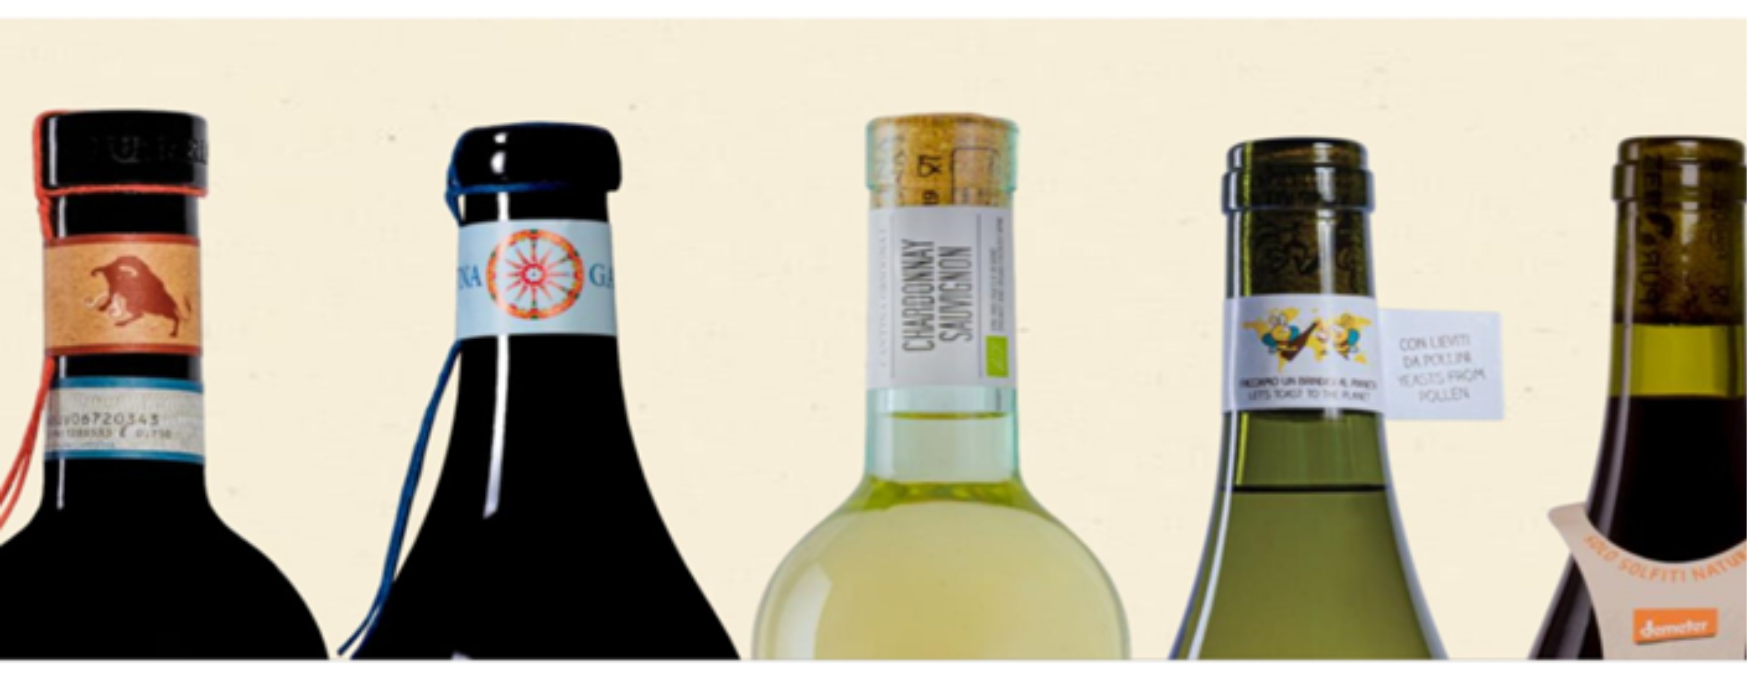 Zeropuro i Lunaria vina ispravan su izbor pri odabiru veganskih i biodinamičkih vina./